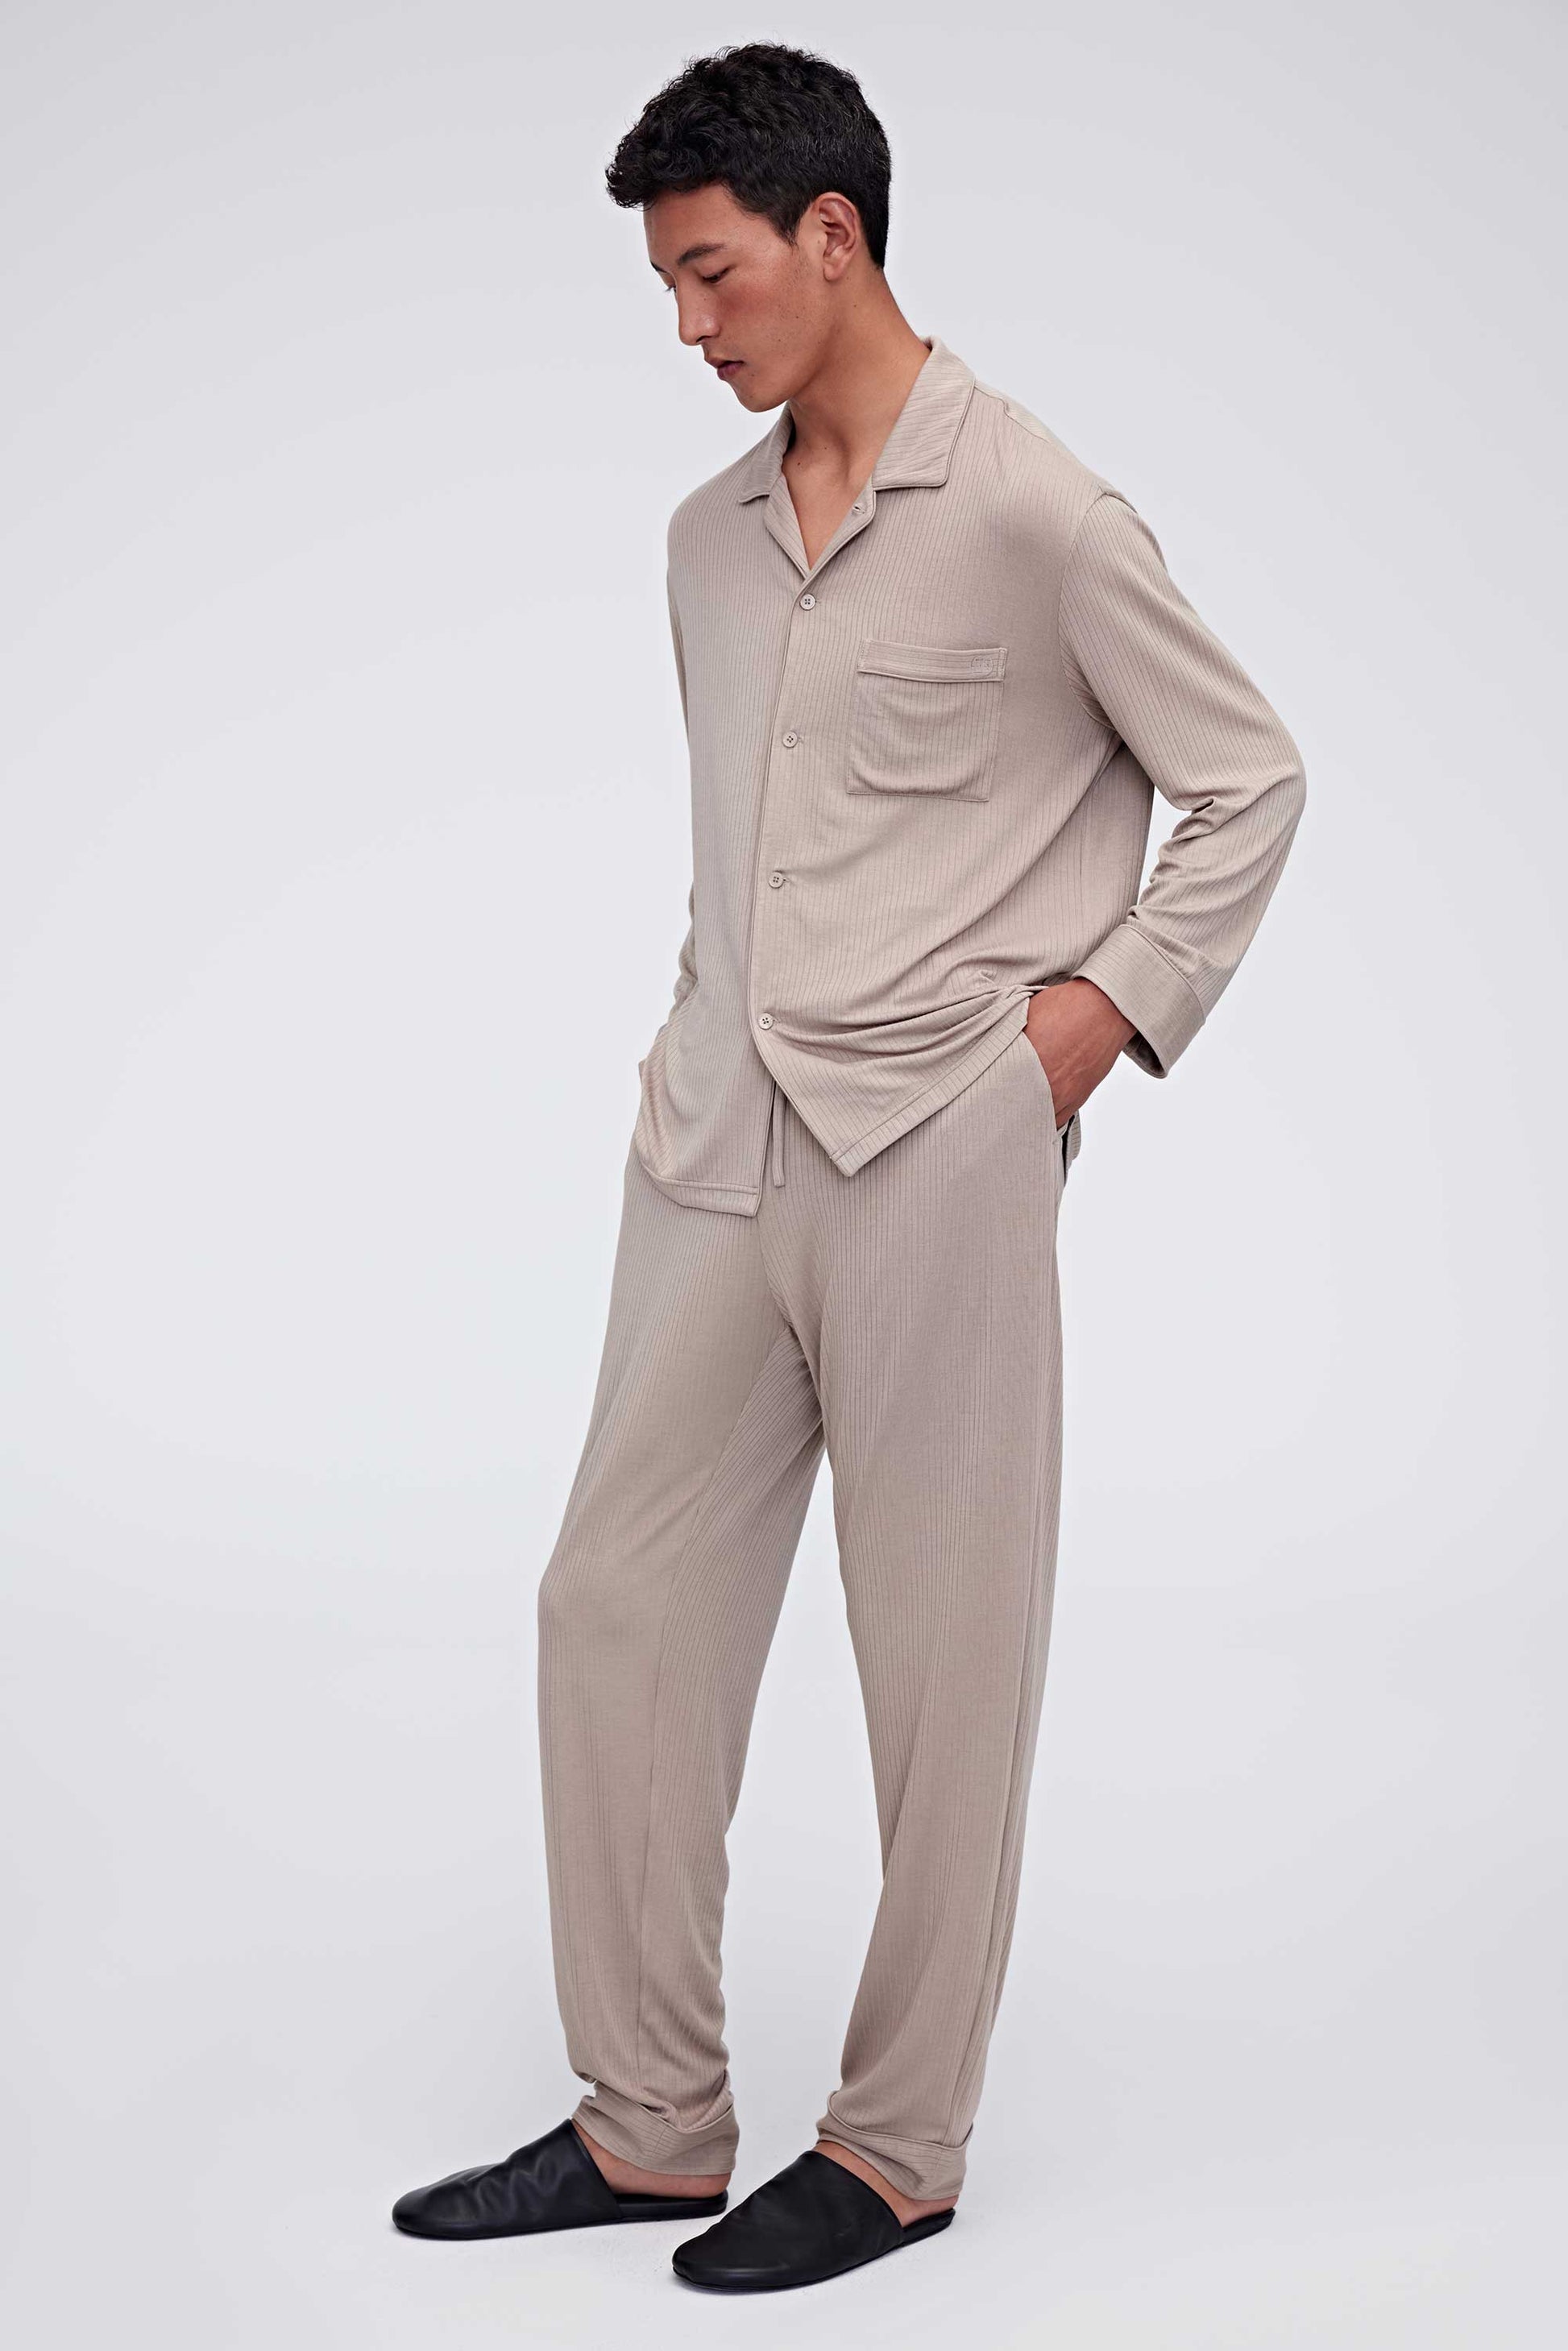 man in tan pajama button up shirt and pants